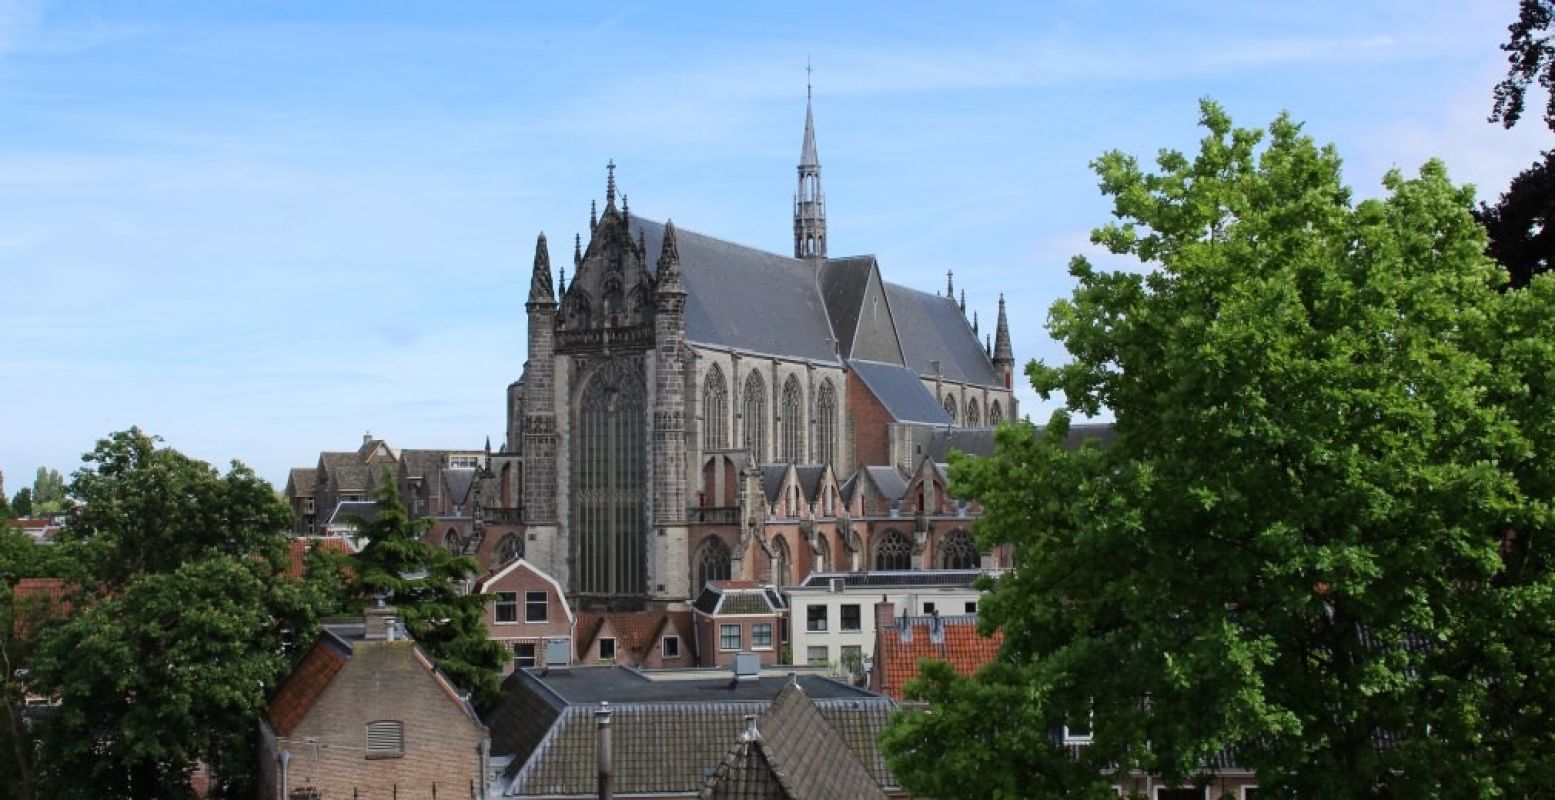 Vanaf de Burcht heb je uitzicht over de hele stad Leiden, waaronder de Hooglandse Kerk. Foto: DagjeWeg.NL.